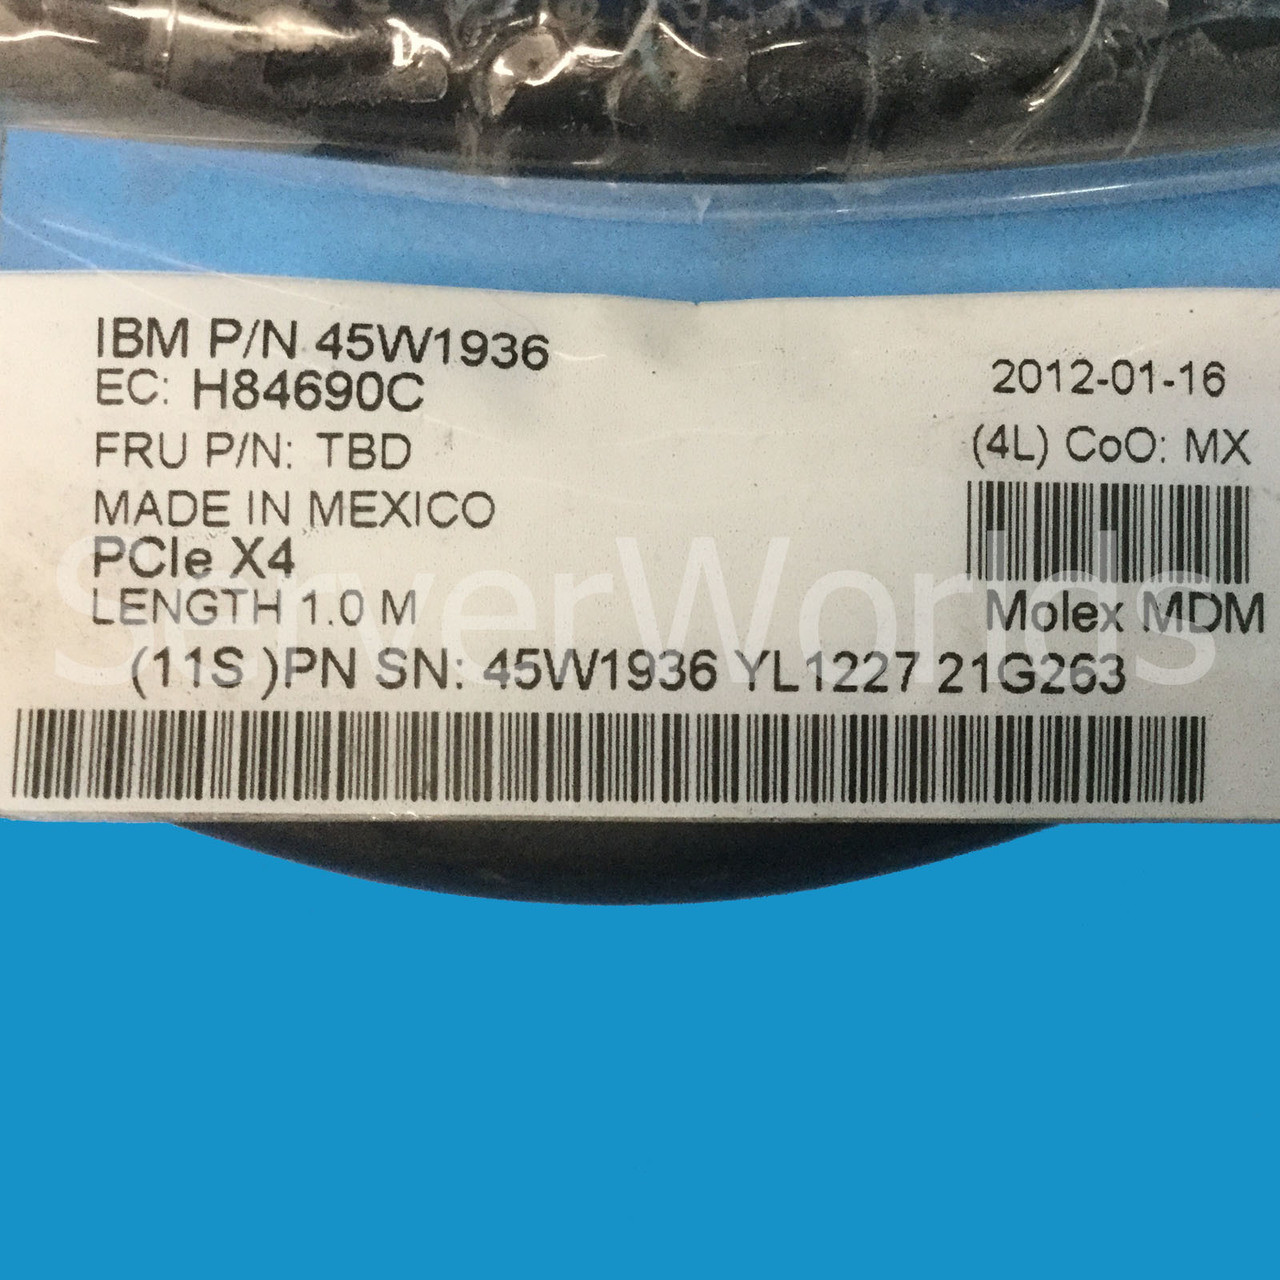 IBM 45W1936 PCIe x4 1.0M Cable